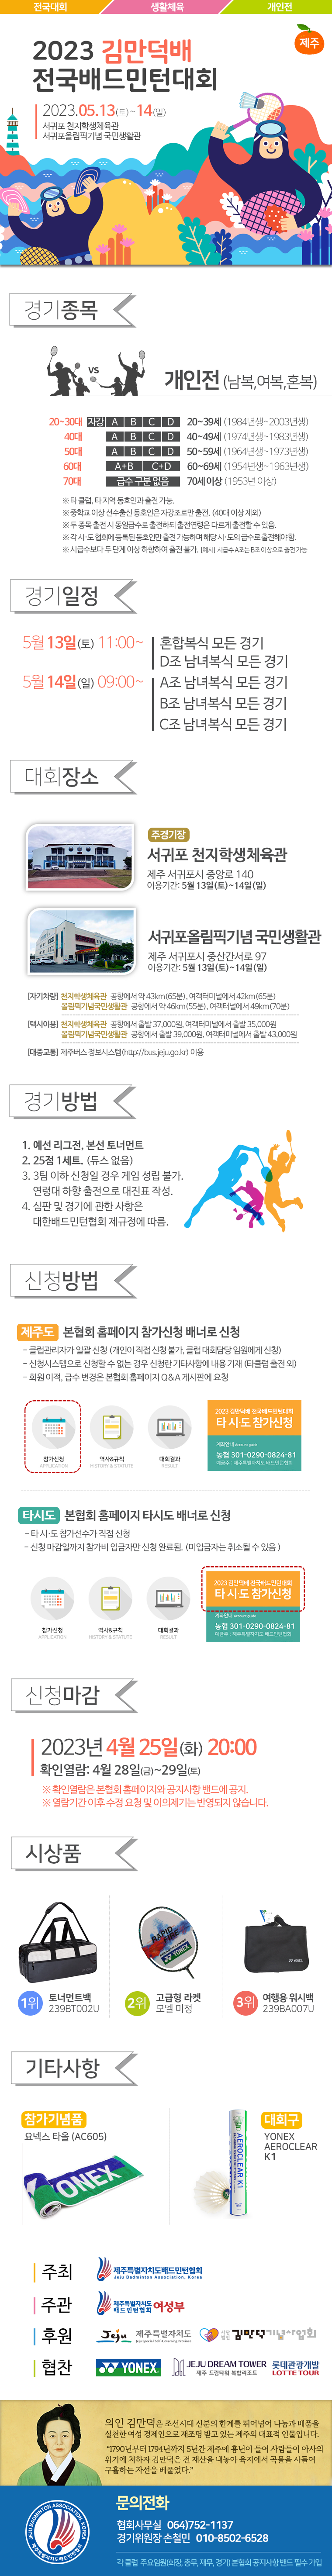 [대회] 2023 김만덕배 배드민턴대회.png